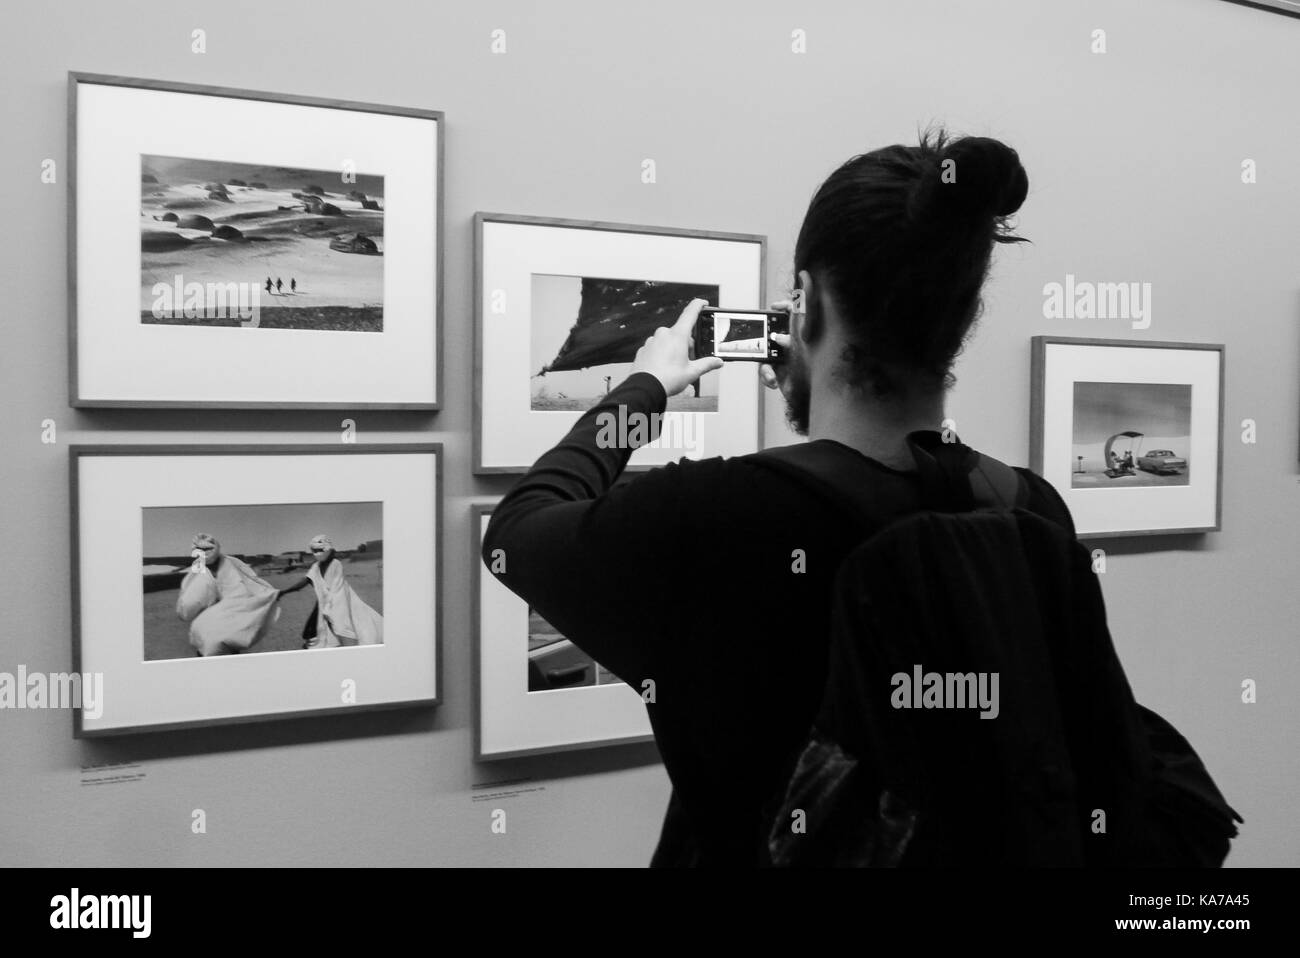 Fondation Henri CARTIER-BRESSON présente "traverser" une exposition de photos par Raymond Depardon, Paris, France Banque D'Images